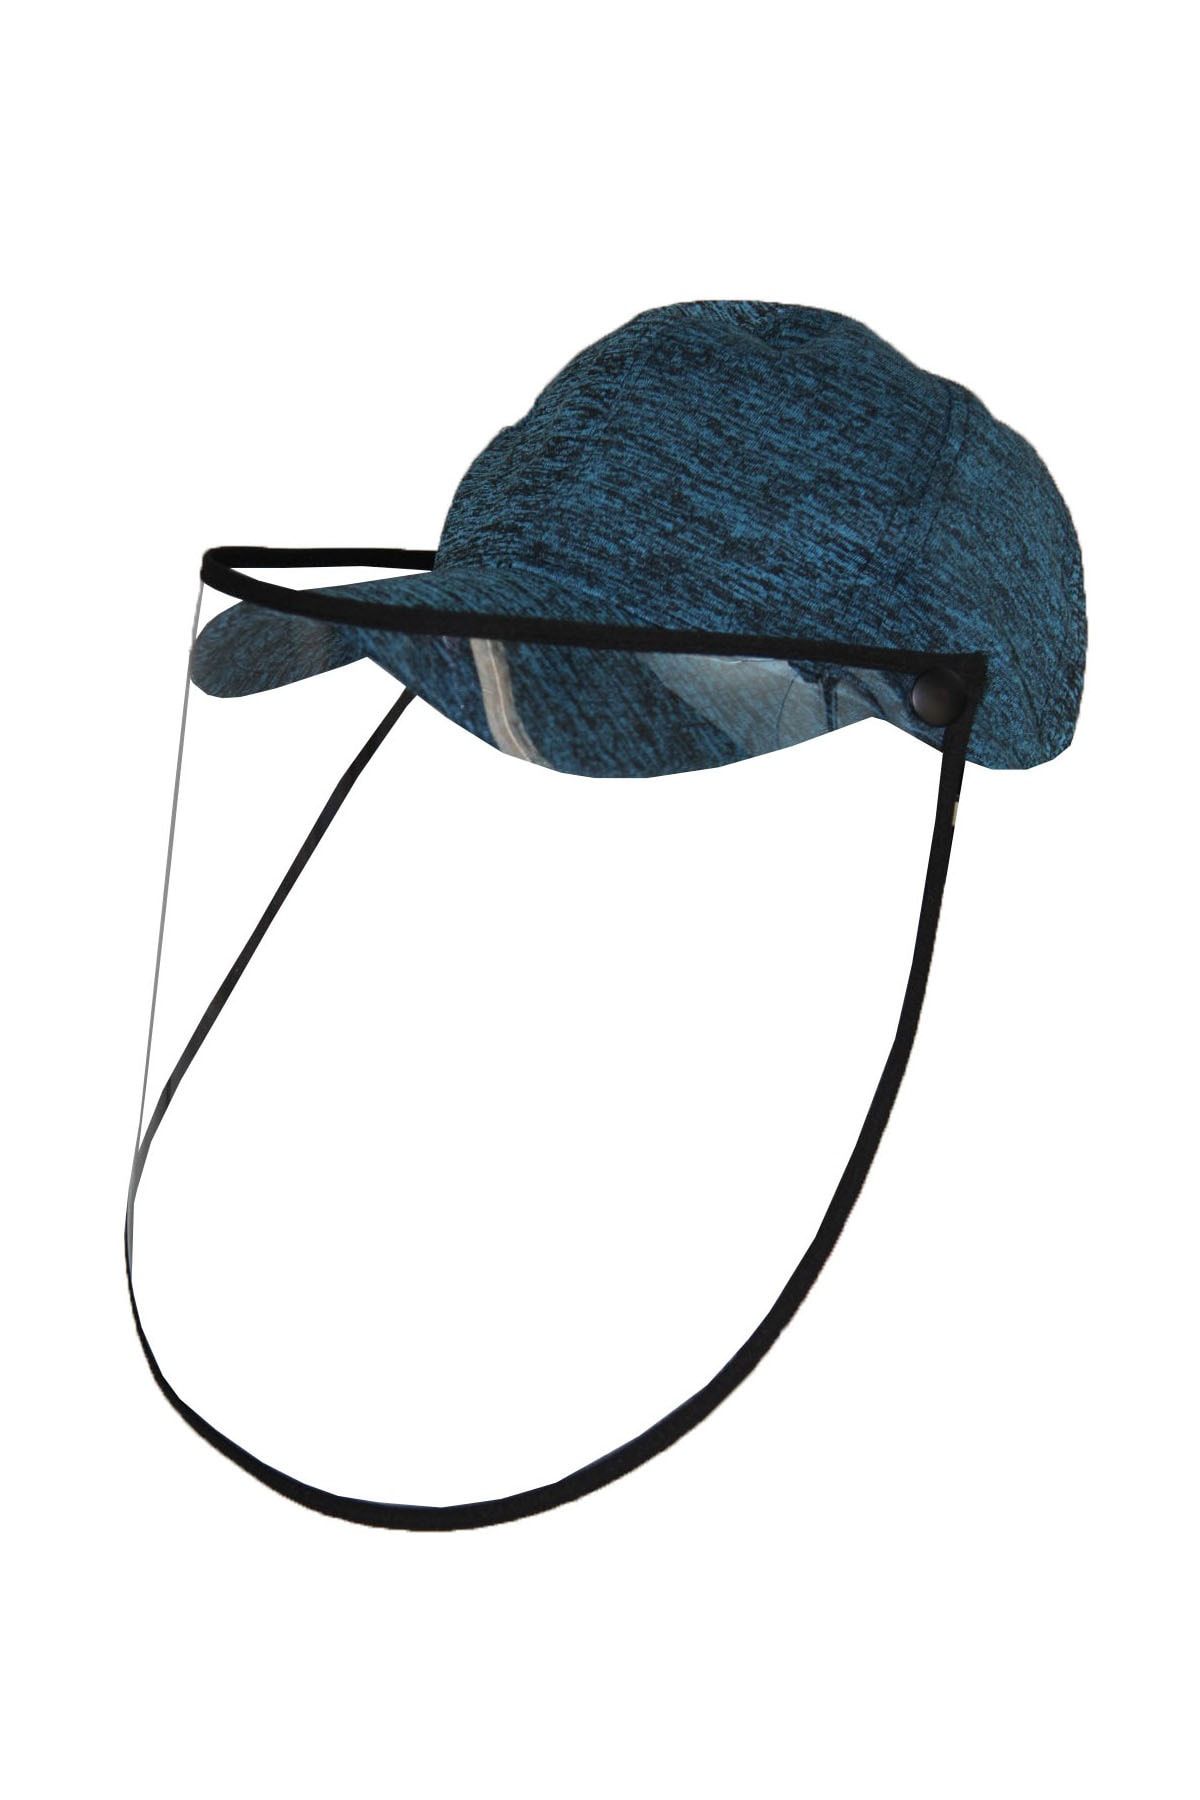 Bay Şapkacı Unisex Turkuaz Yüz Koruyucu Siperlikli Maske Şapka